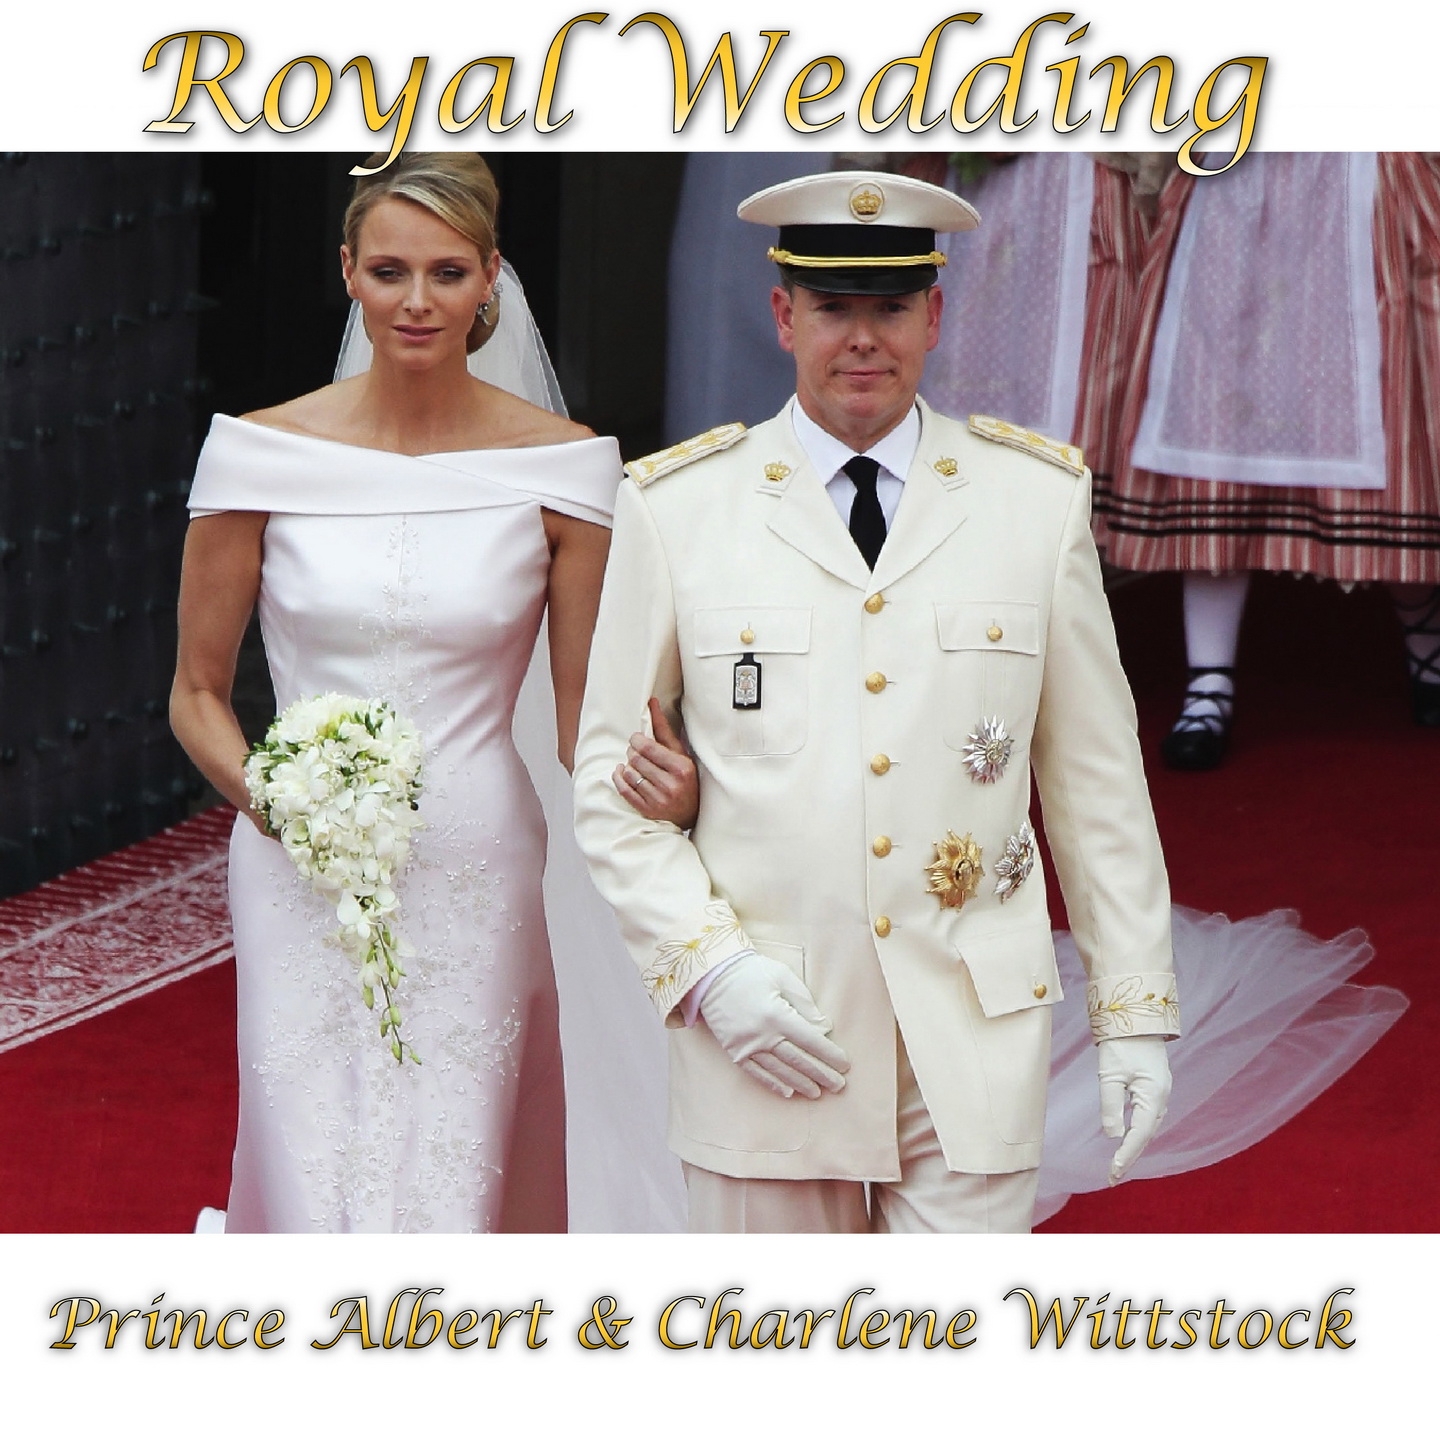 Monaco Royal Wedding: Prince Albert & Charlene Wittstock